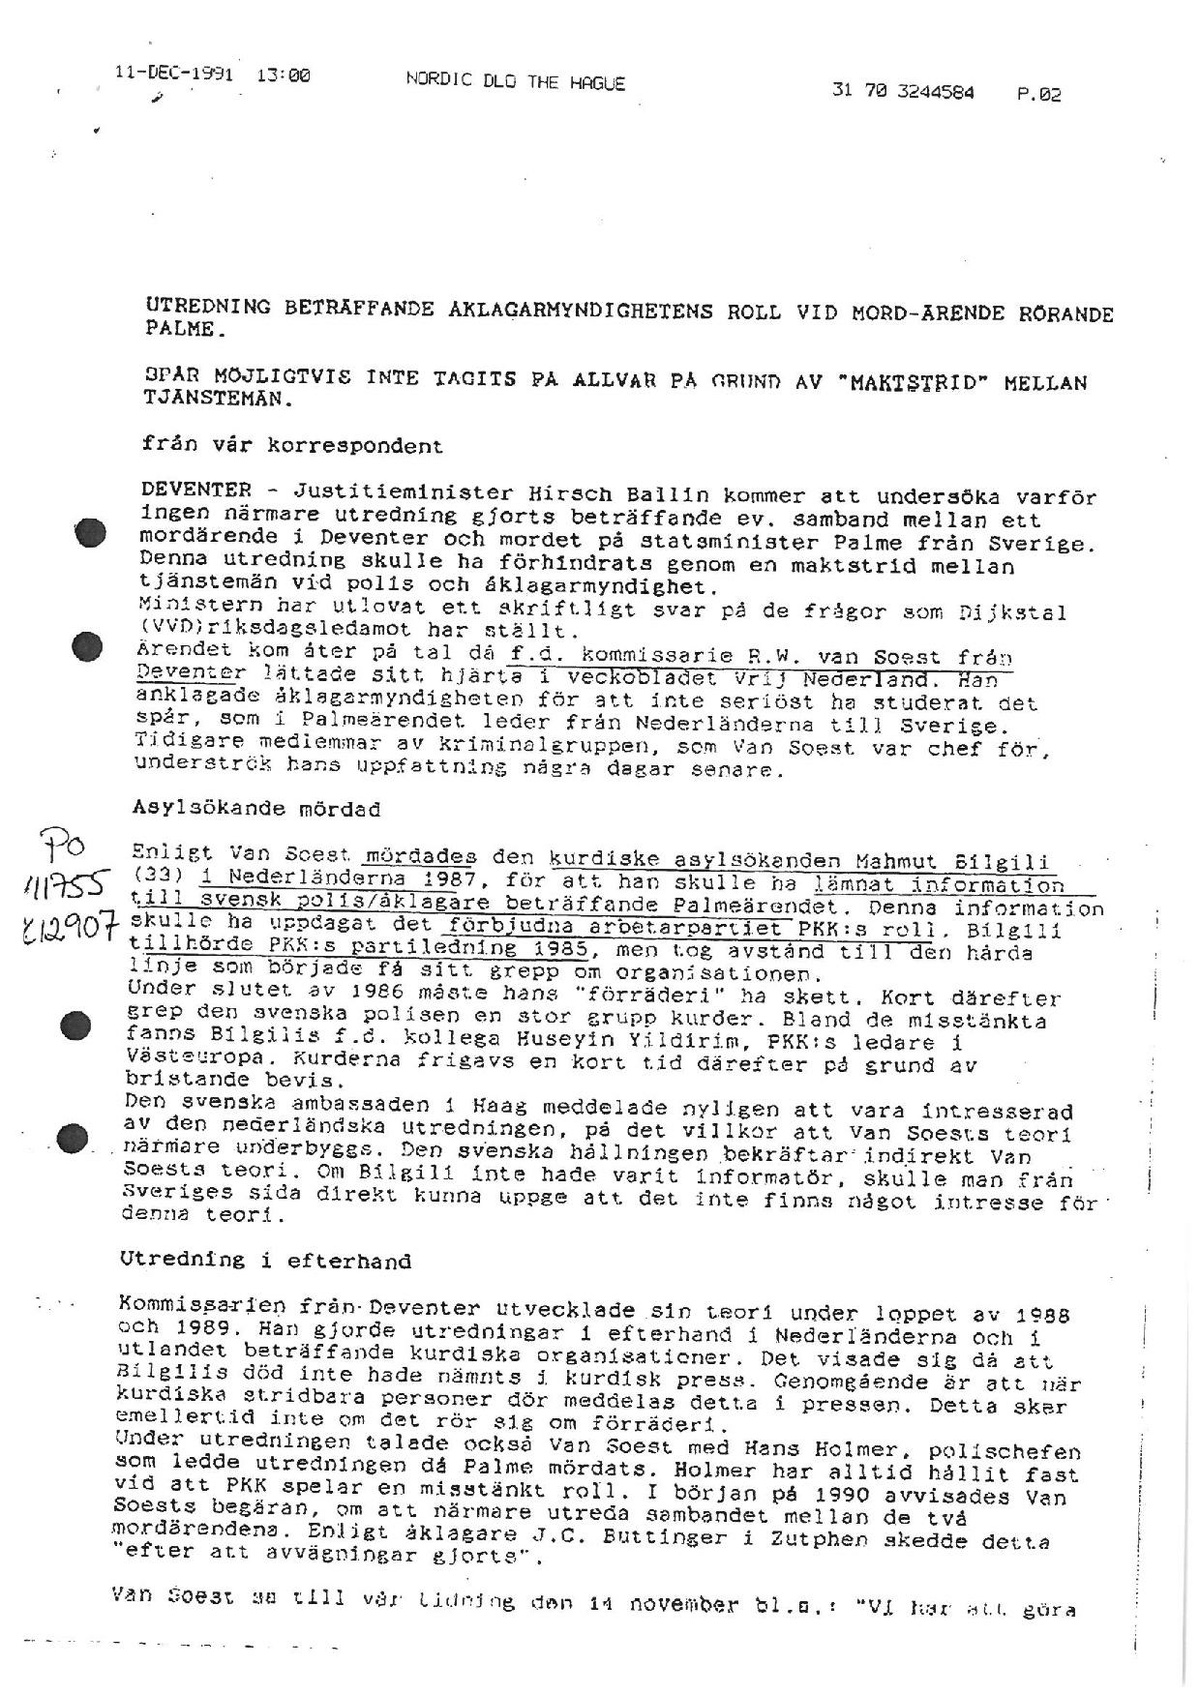 Pol-1991-12-11 Y13604-05 Uppslag Mahmut Bilgili - Kontakter med Dolf von Soest.pdf